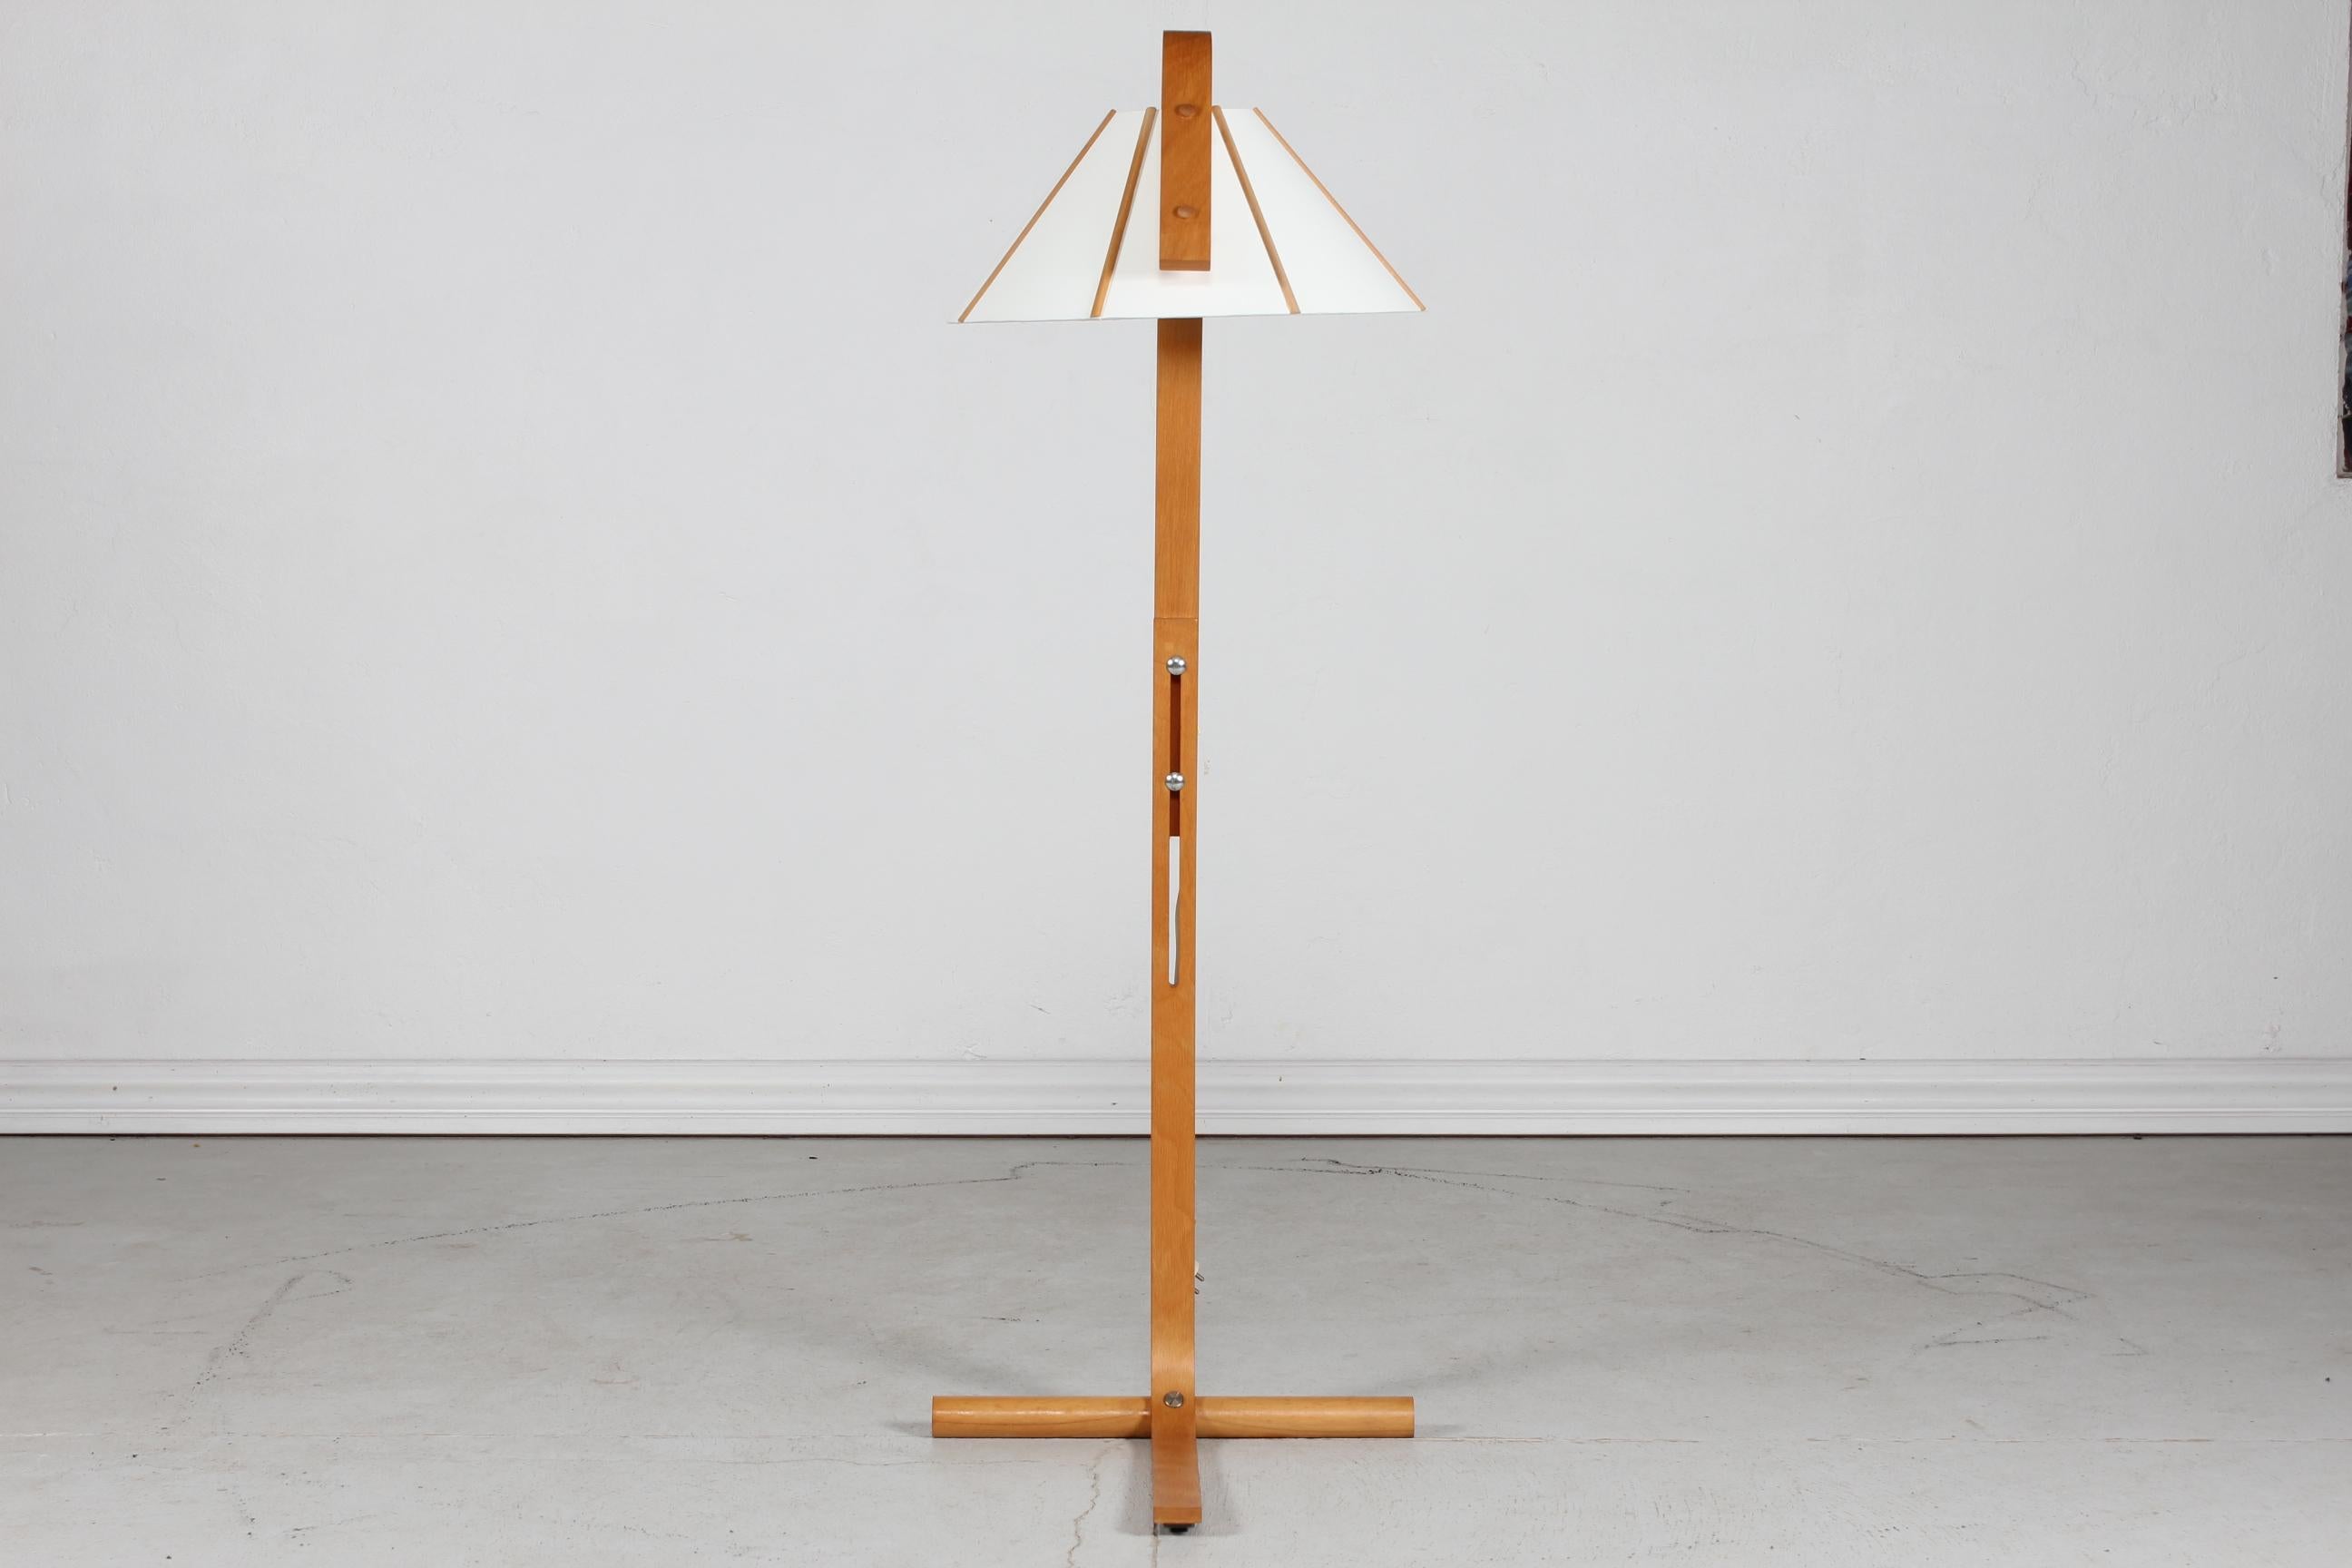 Lampadaire vintage original conçu par Jan Wickelgren pour le fabricant de lampes suédois Aneta dans les années 1970.

La hauteur de la lampe est réglable de 115 cm à 140 cm.

Elle est fabriquée en bois de hêtre et l'abat-jour est en tissu de lin